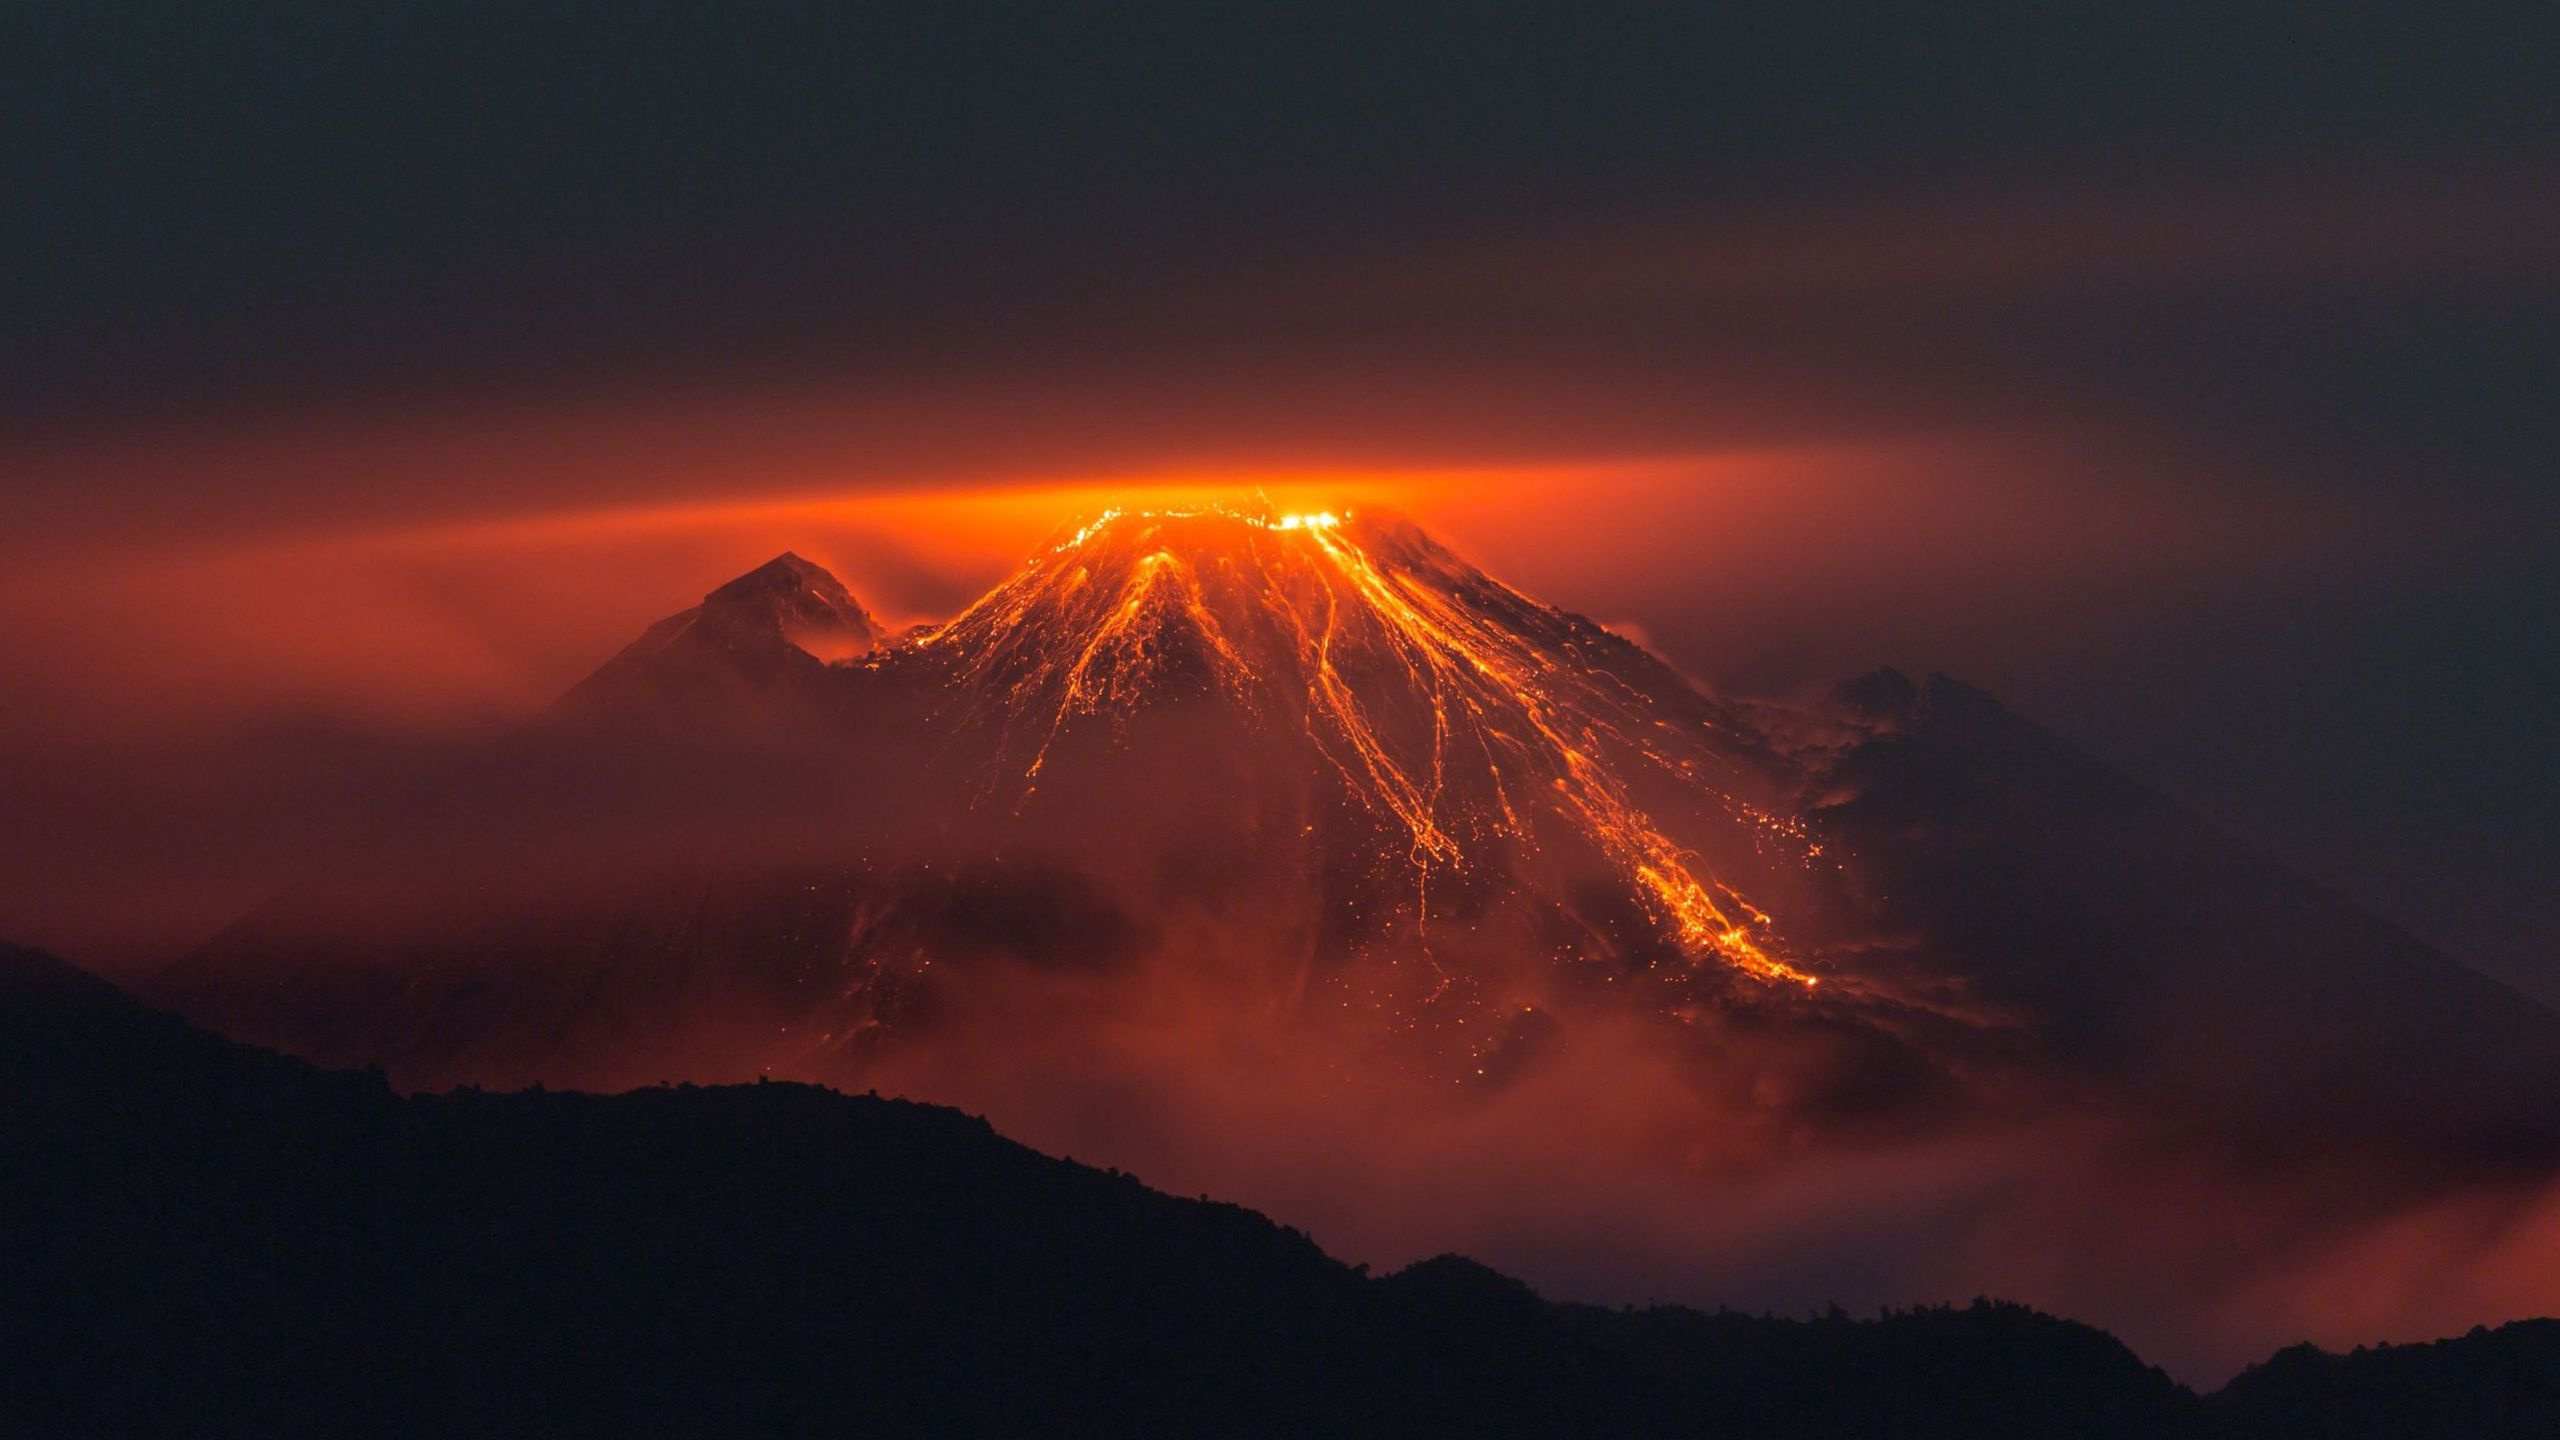 成层, 余辉, 日出, 类型的火山爆发, 黎明 壁纸 2560x1440 允许